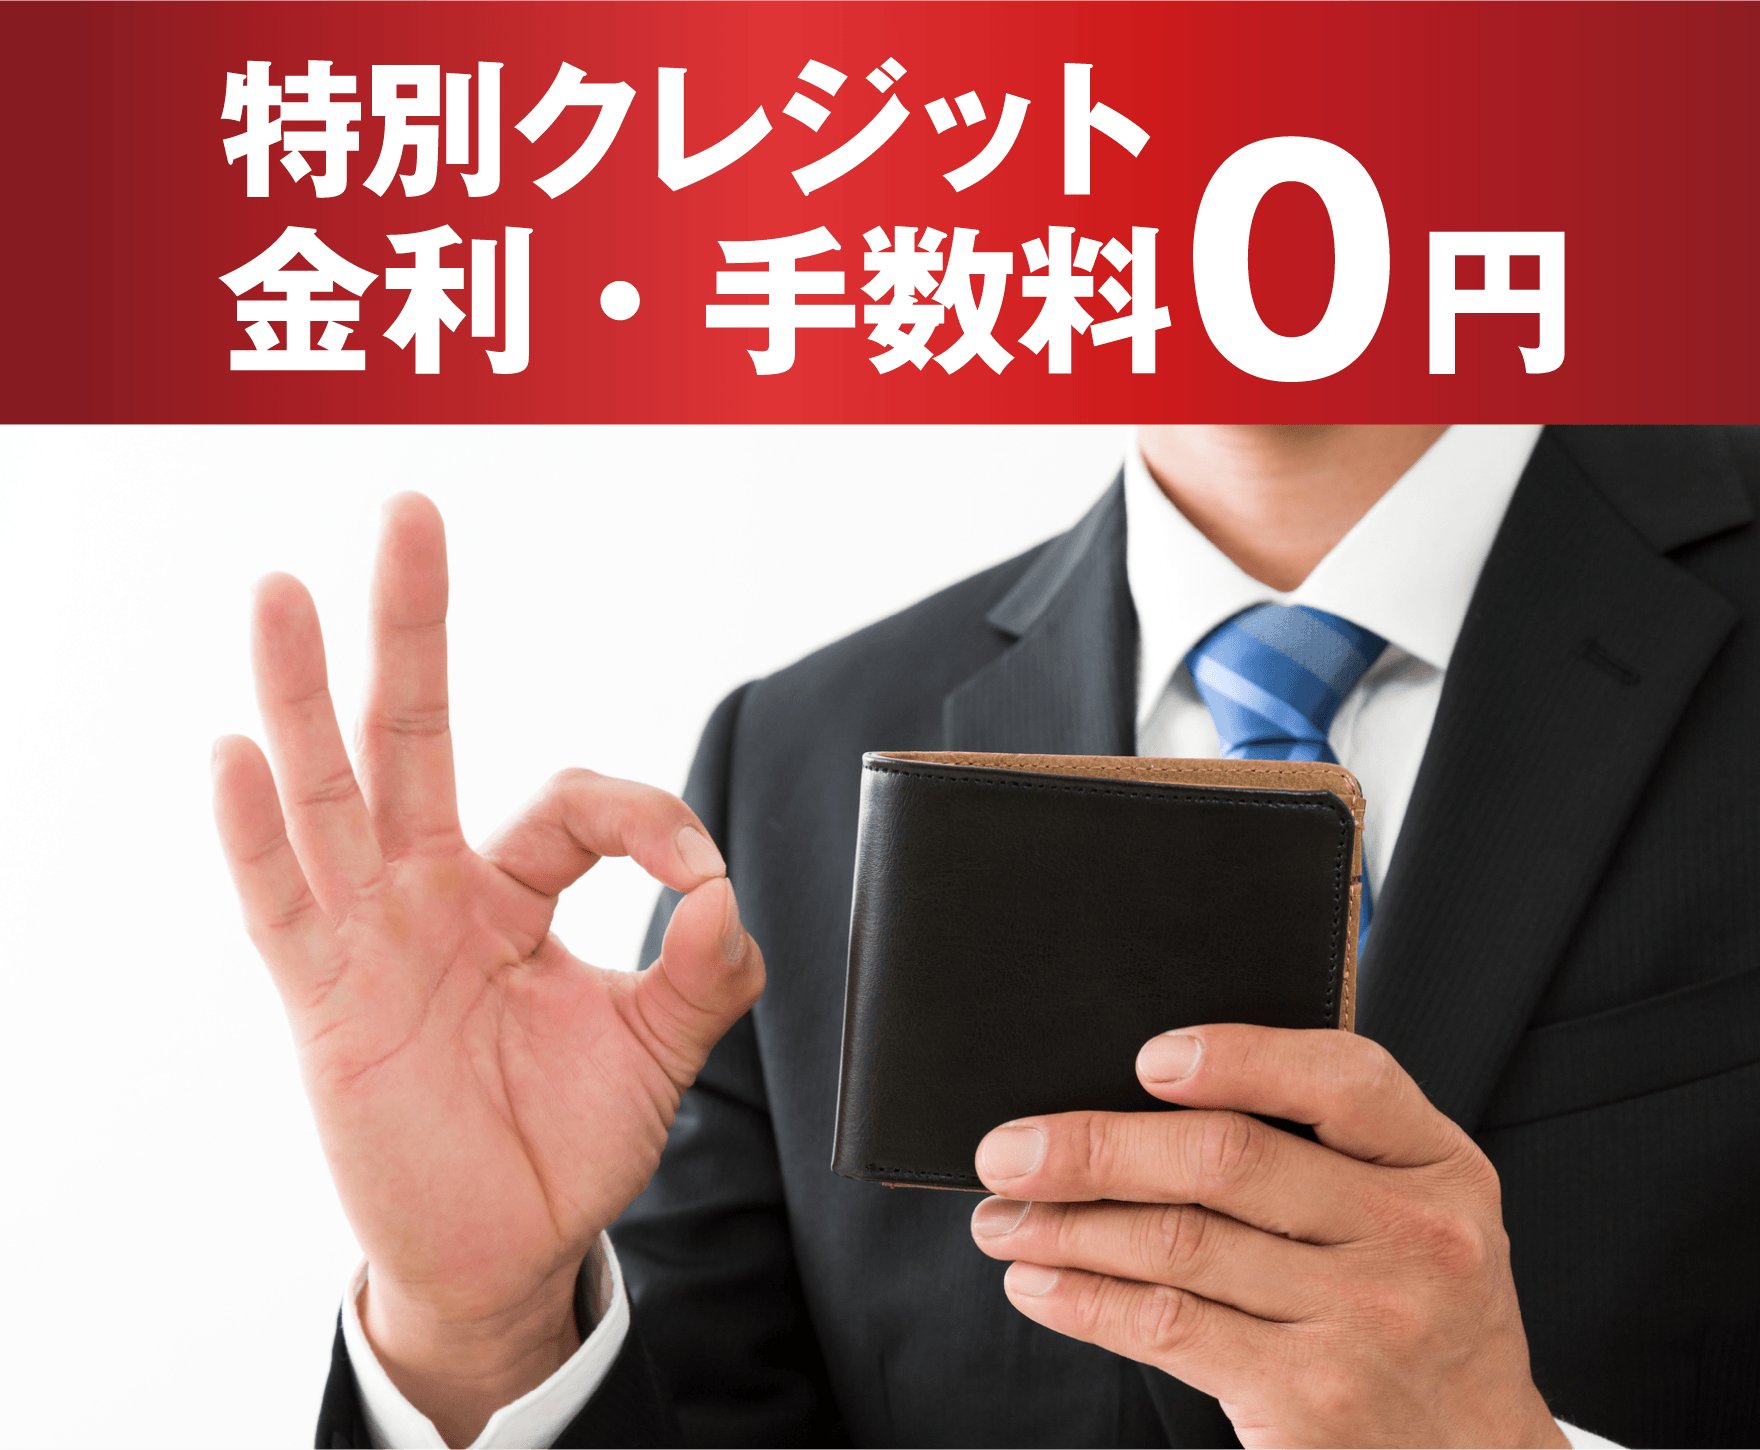 1. 特別クレジット 金利・手数料０円